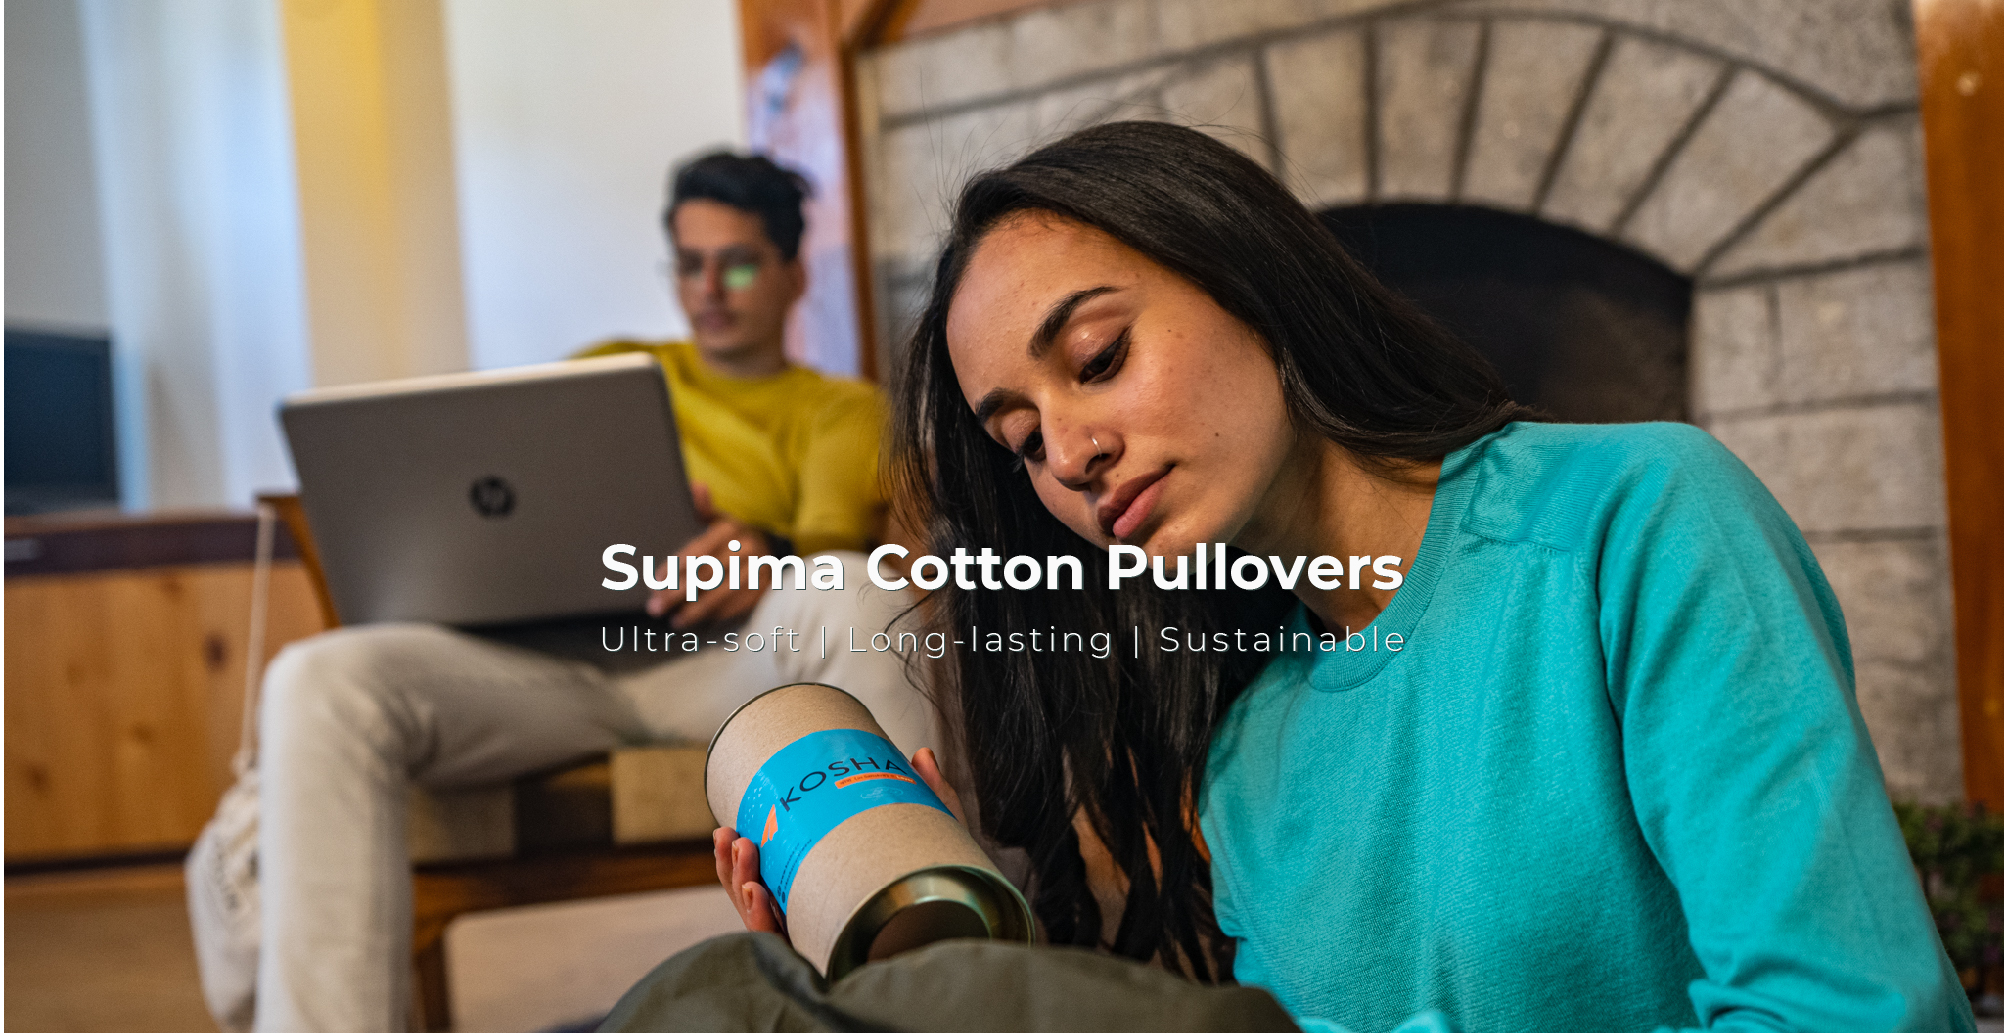 Supima Cotton Pullover